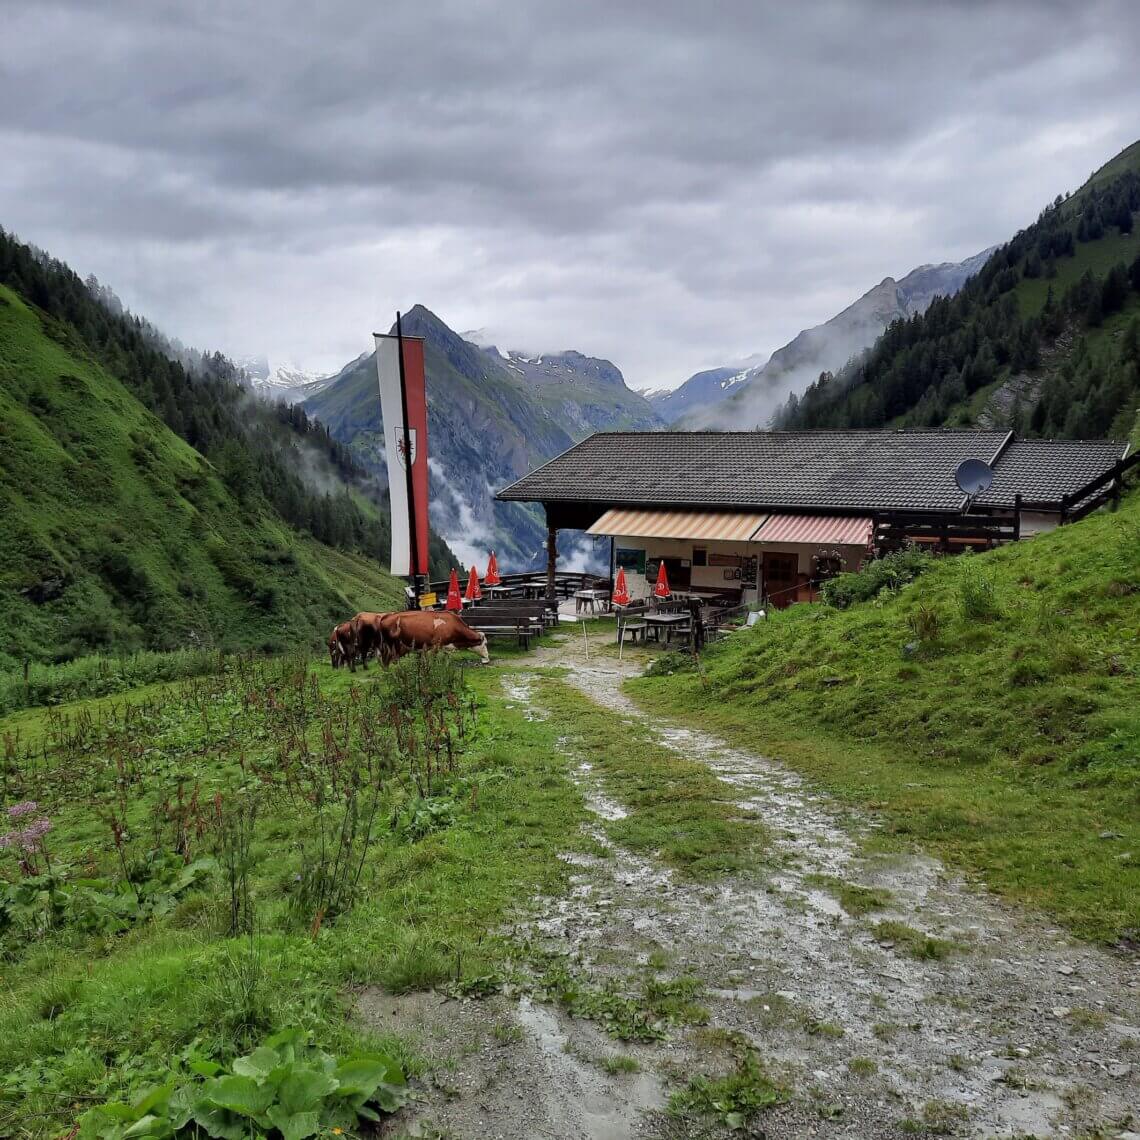 Daar ligt de Lasnitzenhütte, onze eerste overnachting van onze huttentocht in het Virgental in Oostenrijk.